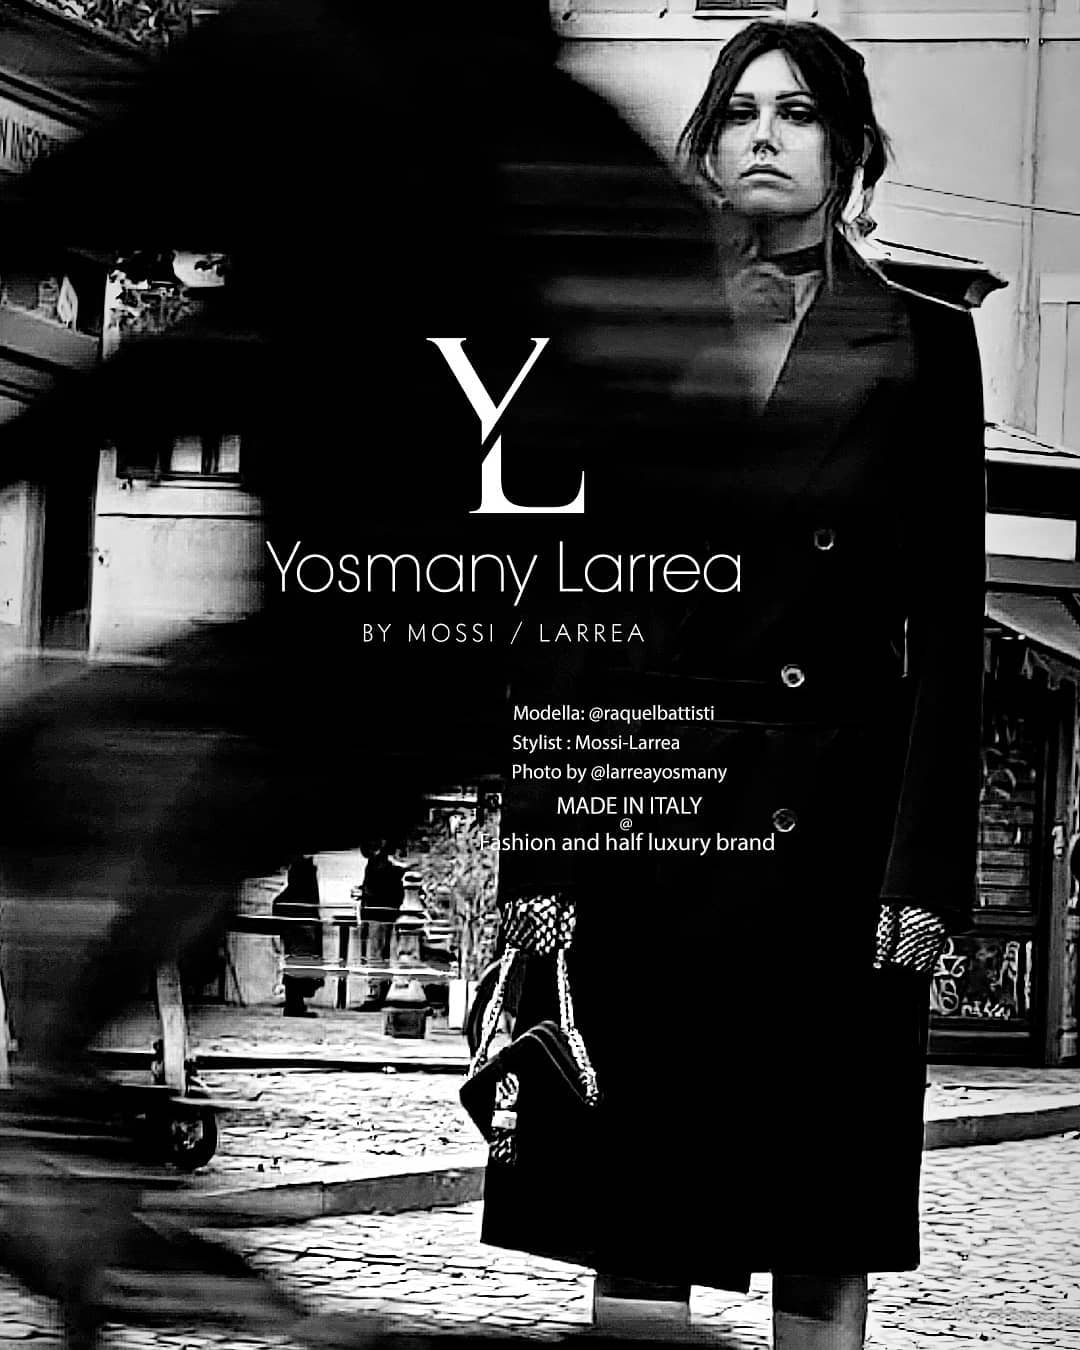 Yosmany Larrea. Diseñador cubano radicado en Italia. Mossi Larrea.